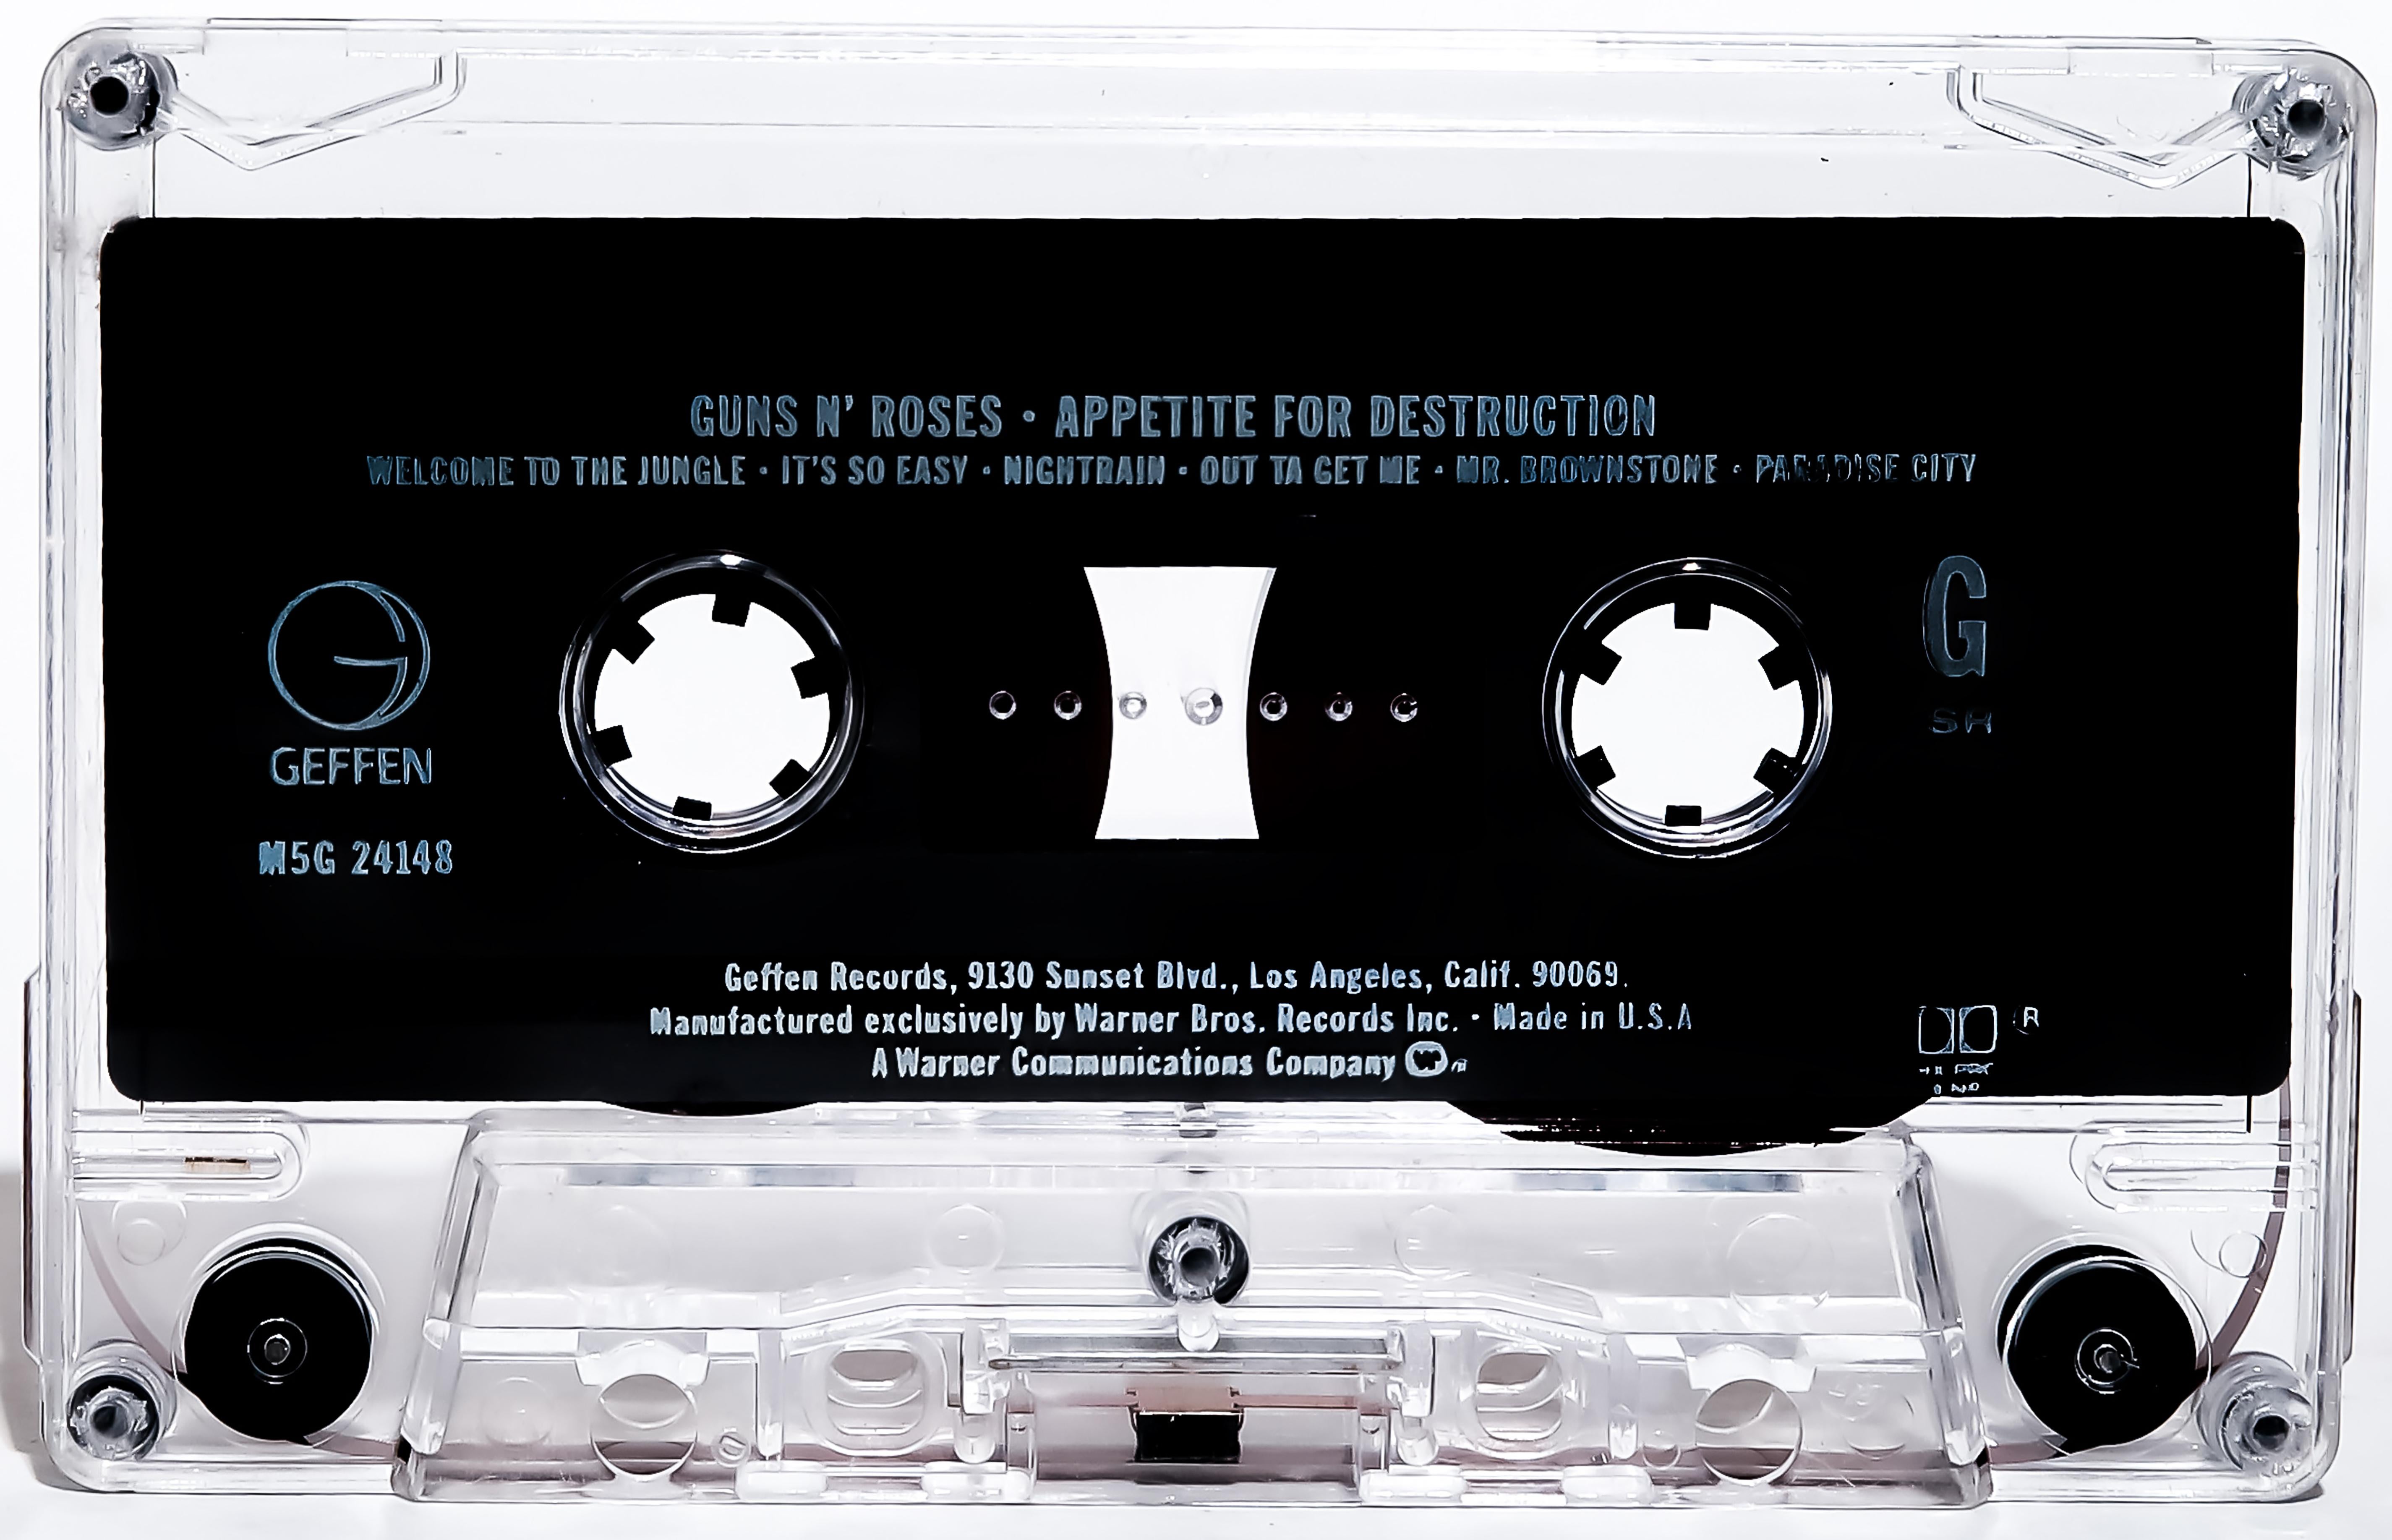 Destro Color Photograph - Guns N' Roses 28x40 Appetite for Destruction Pop Art Photography Print